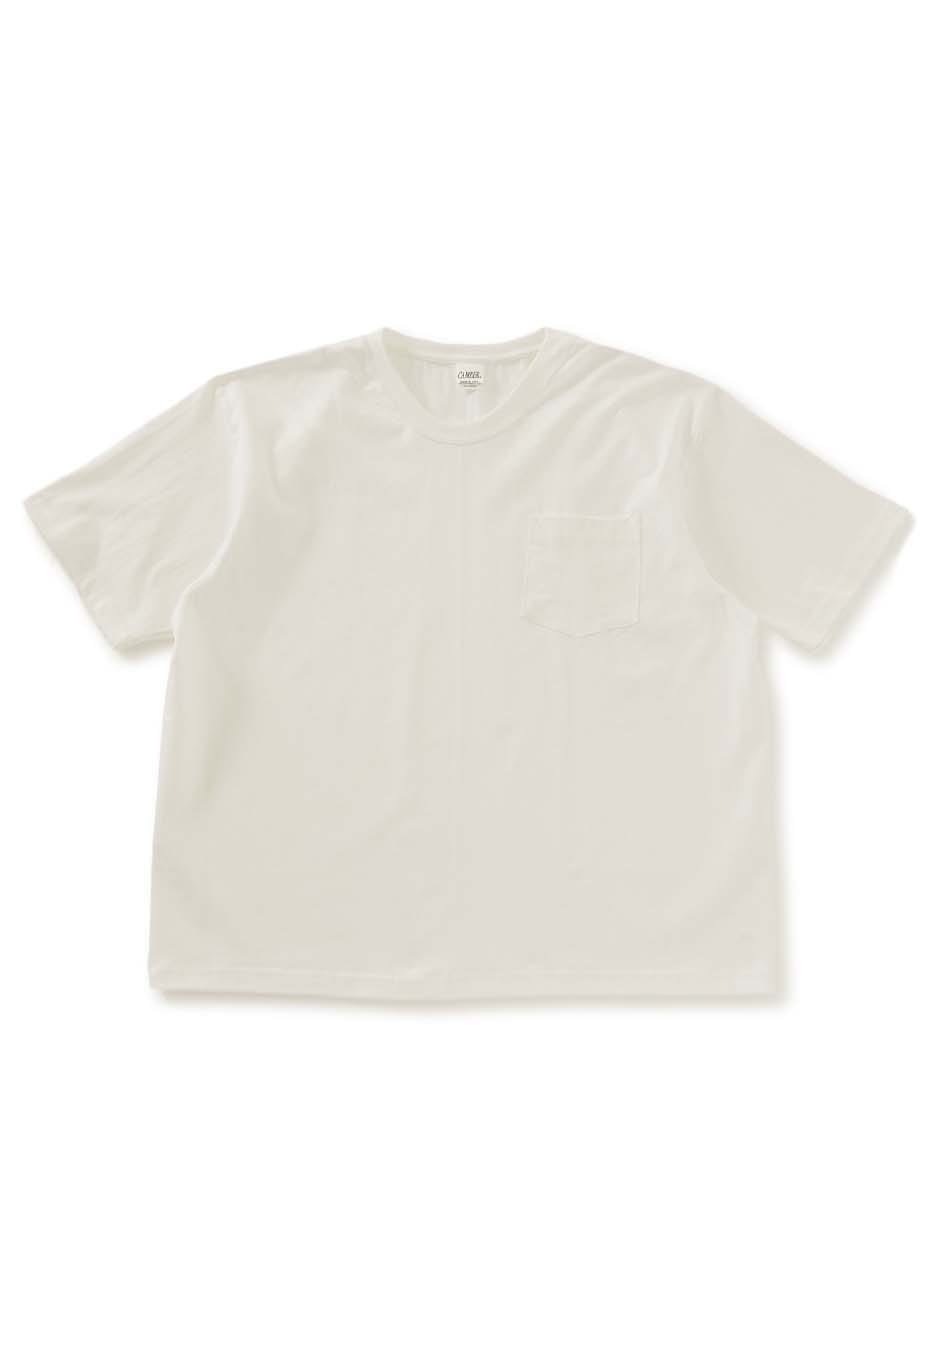 CAMBER マックスウェイト302 ポケットTシャツ XXL